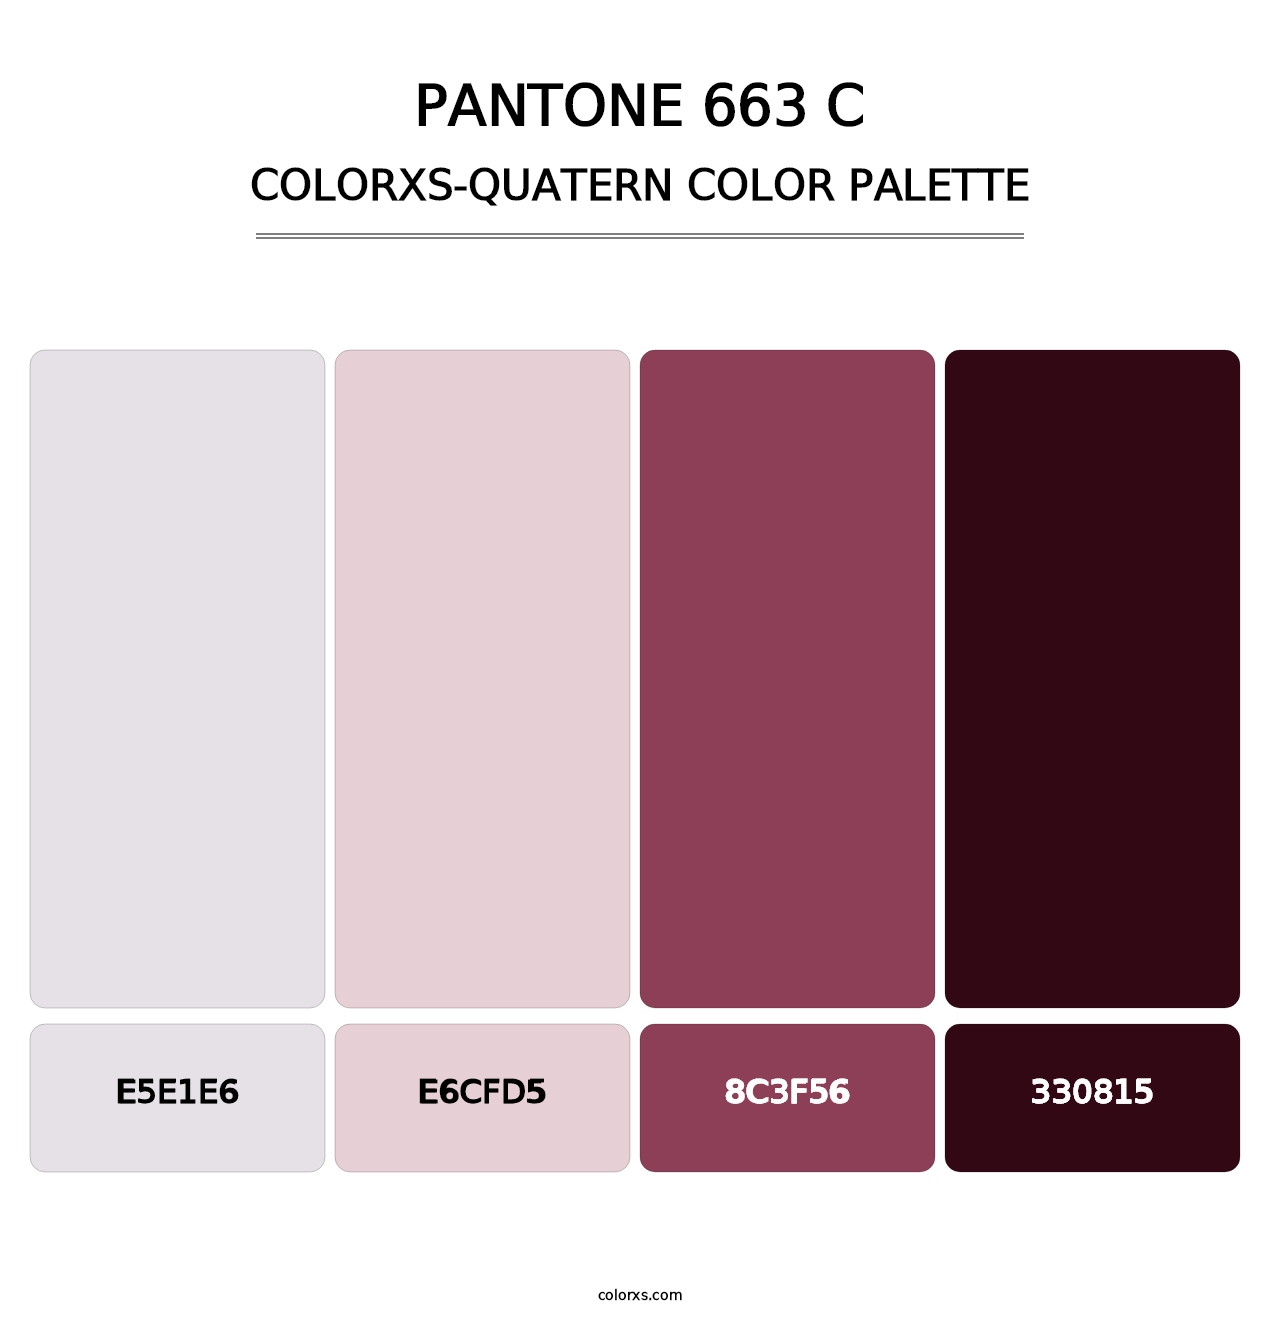 PANTONE 663 C - Colorxs Quatern Palette